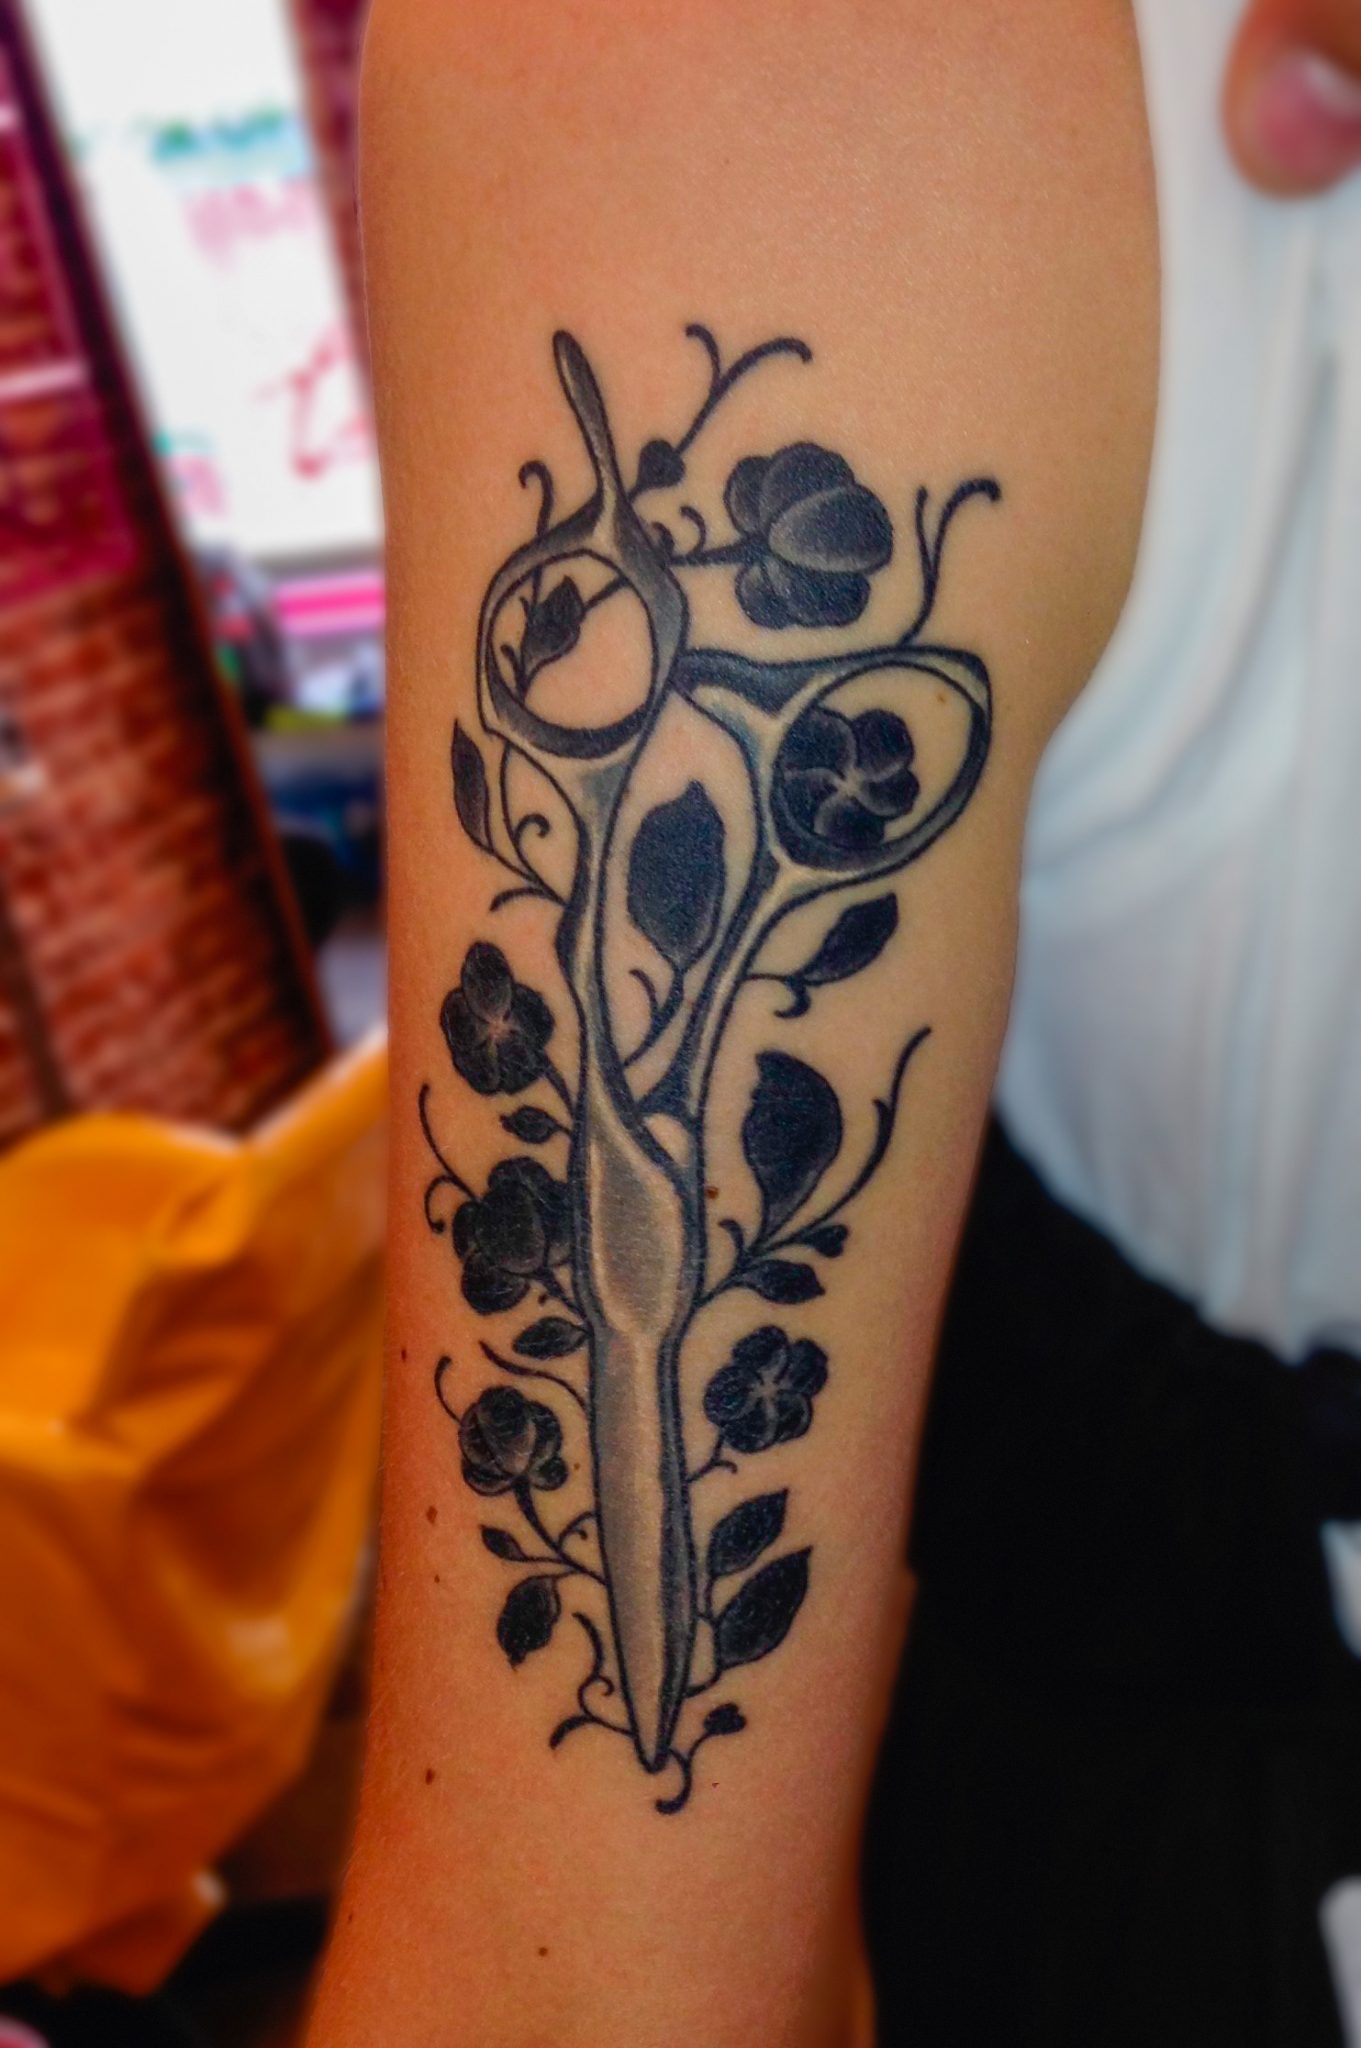 Arm Tattoo einer Mizutani Schere Acro Z-1 umhüllt in Blumen